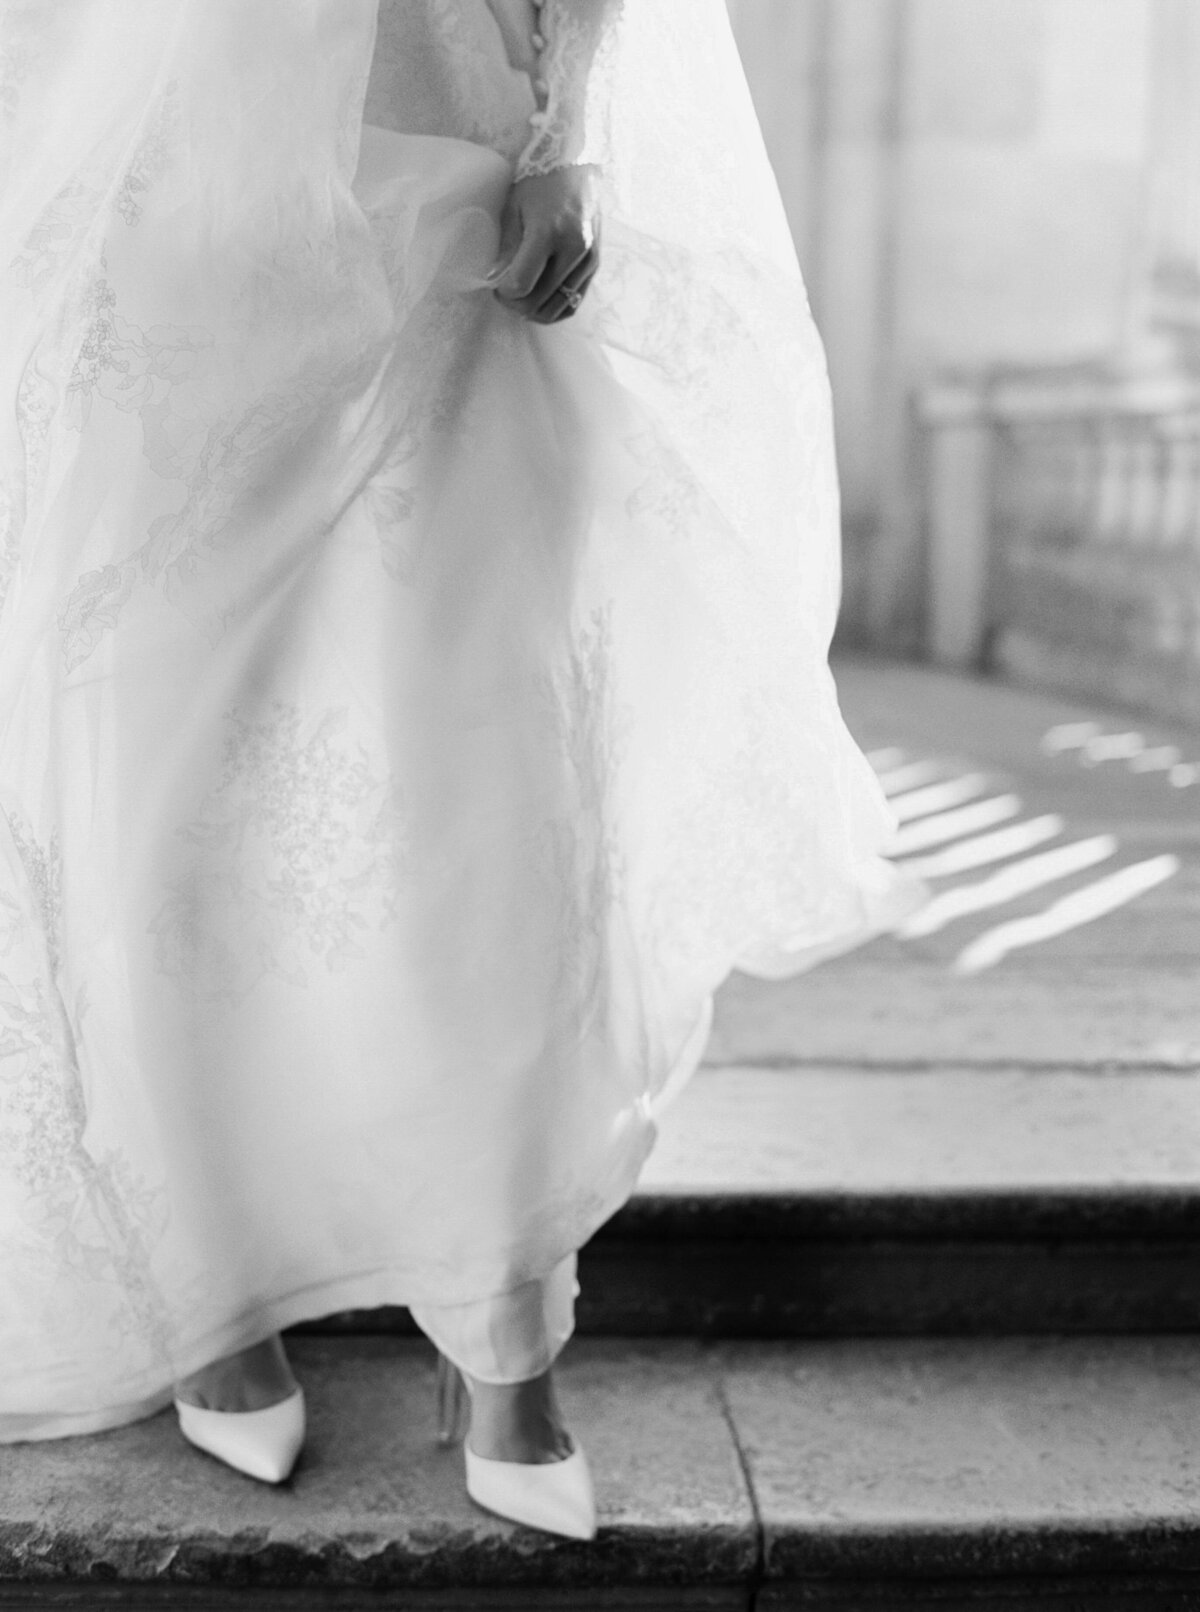 Paris Wedding Photographer - Janna Brown Photography